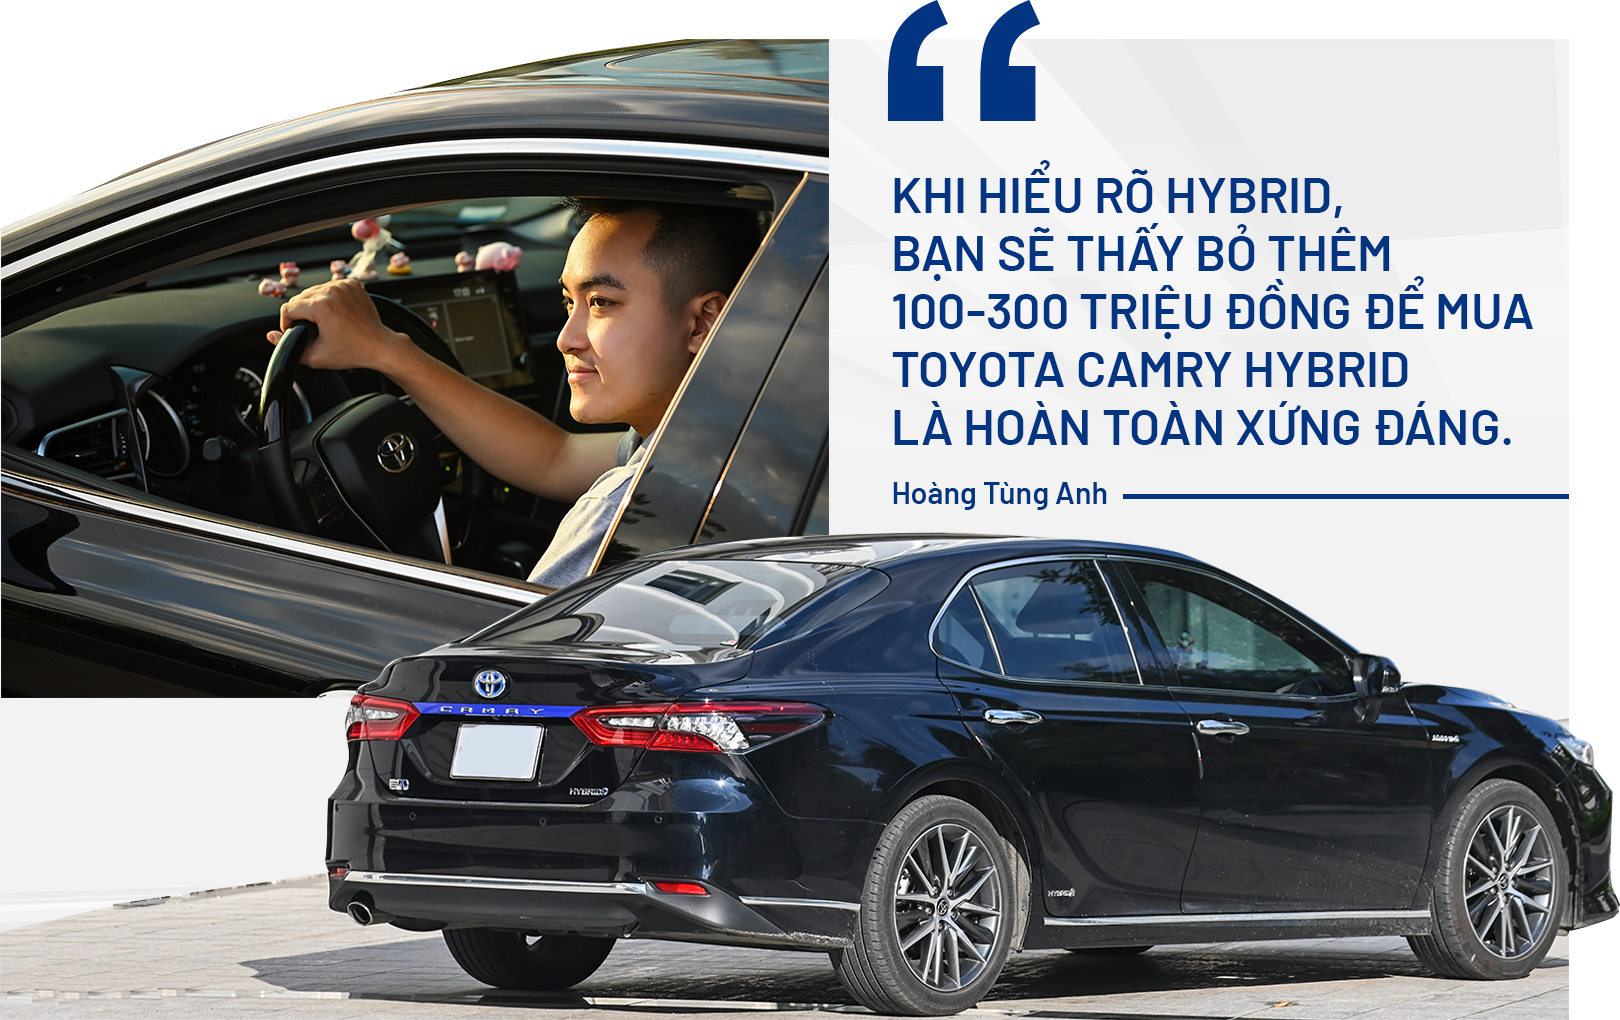 9X chi số tiền khủng sở hữu Toyota Camry Hybrid, lý giải nguyên nhân phía sau?